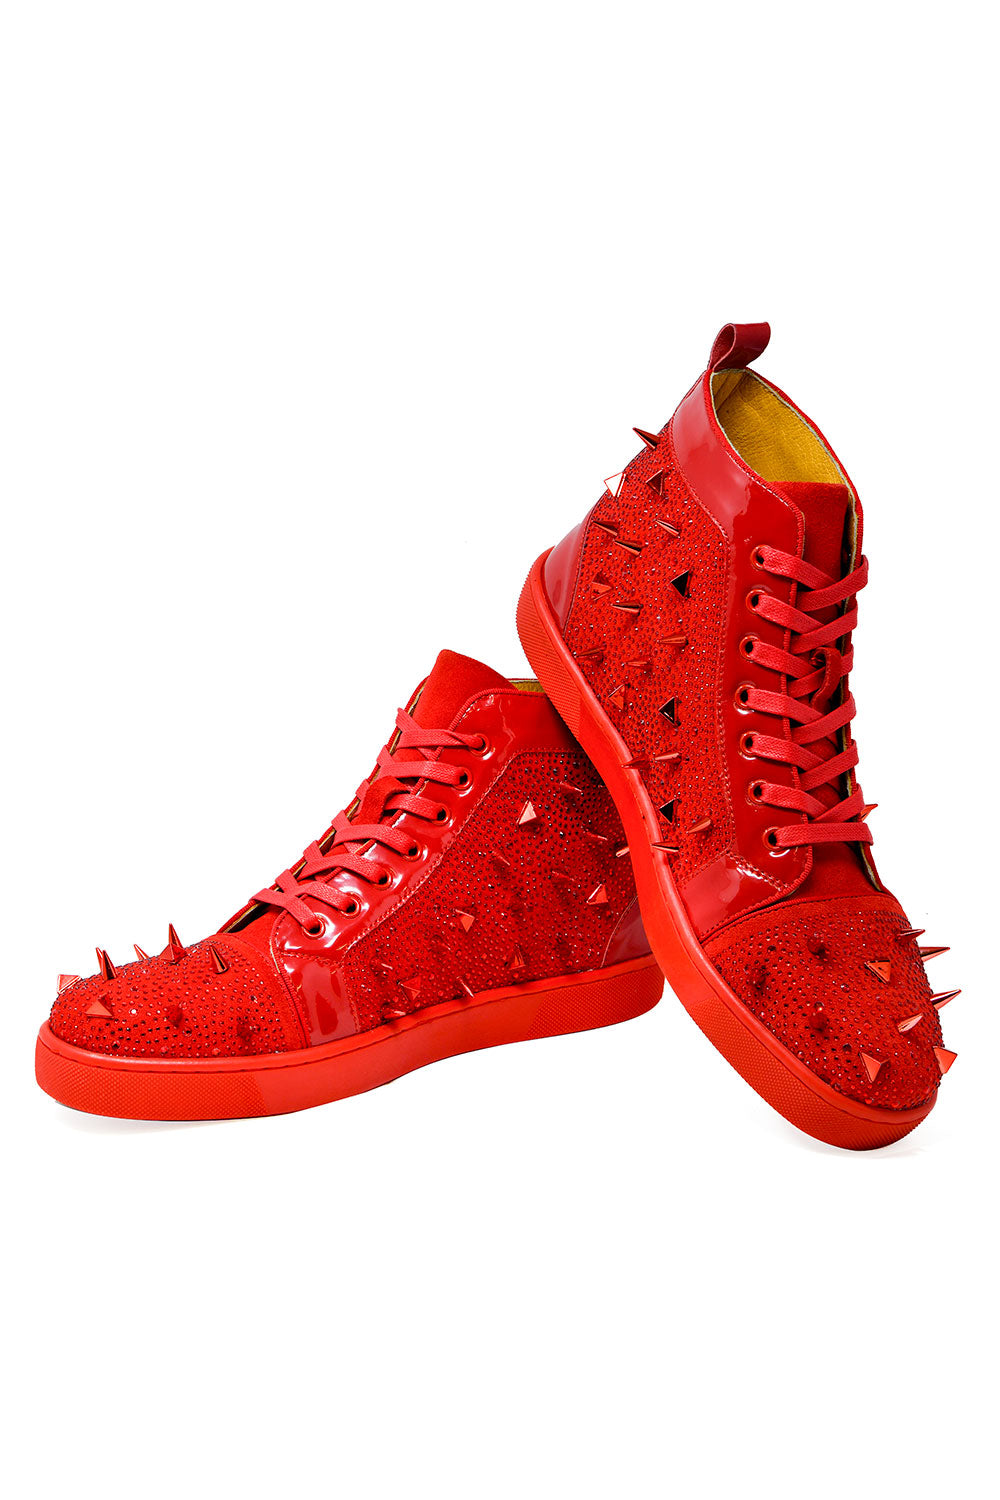 Barabas men's rhinestone spike luxury high-top sneakers SH715